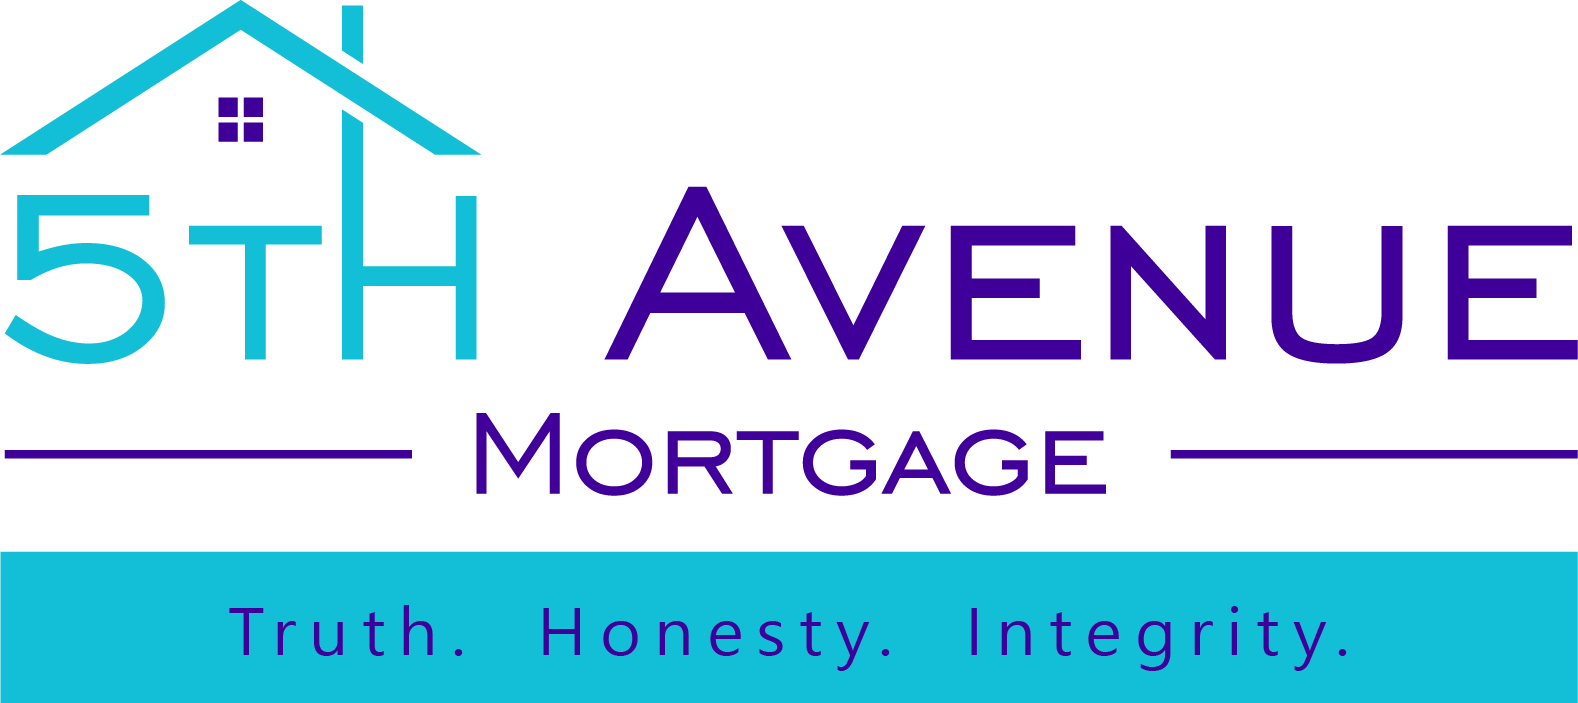 5th Avenue Mortgage Corporation